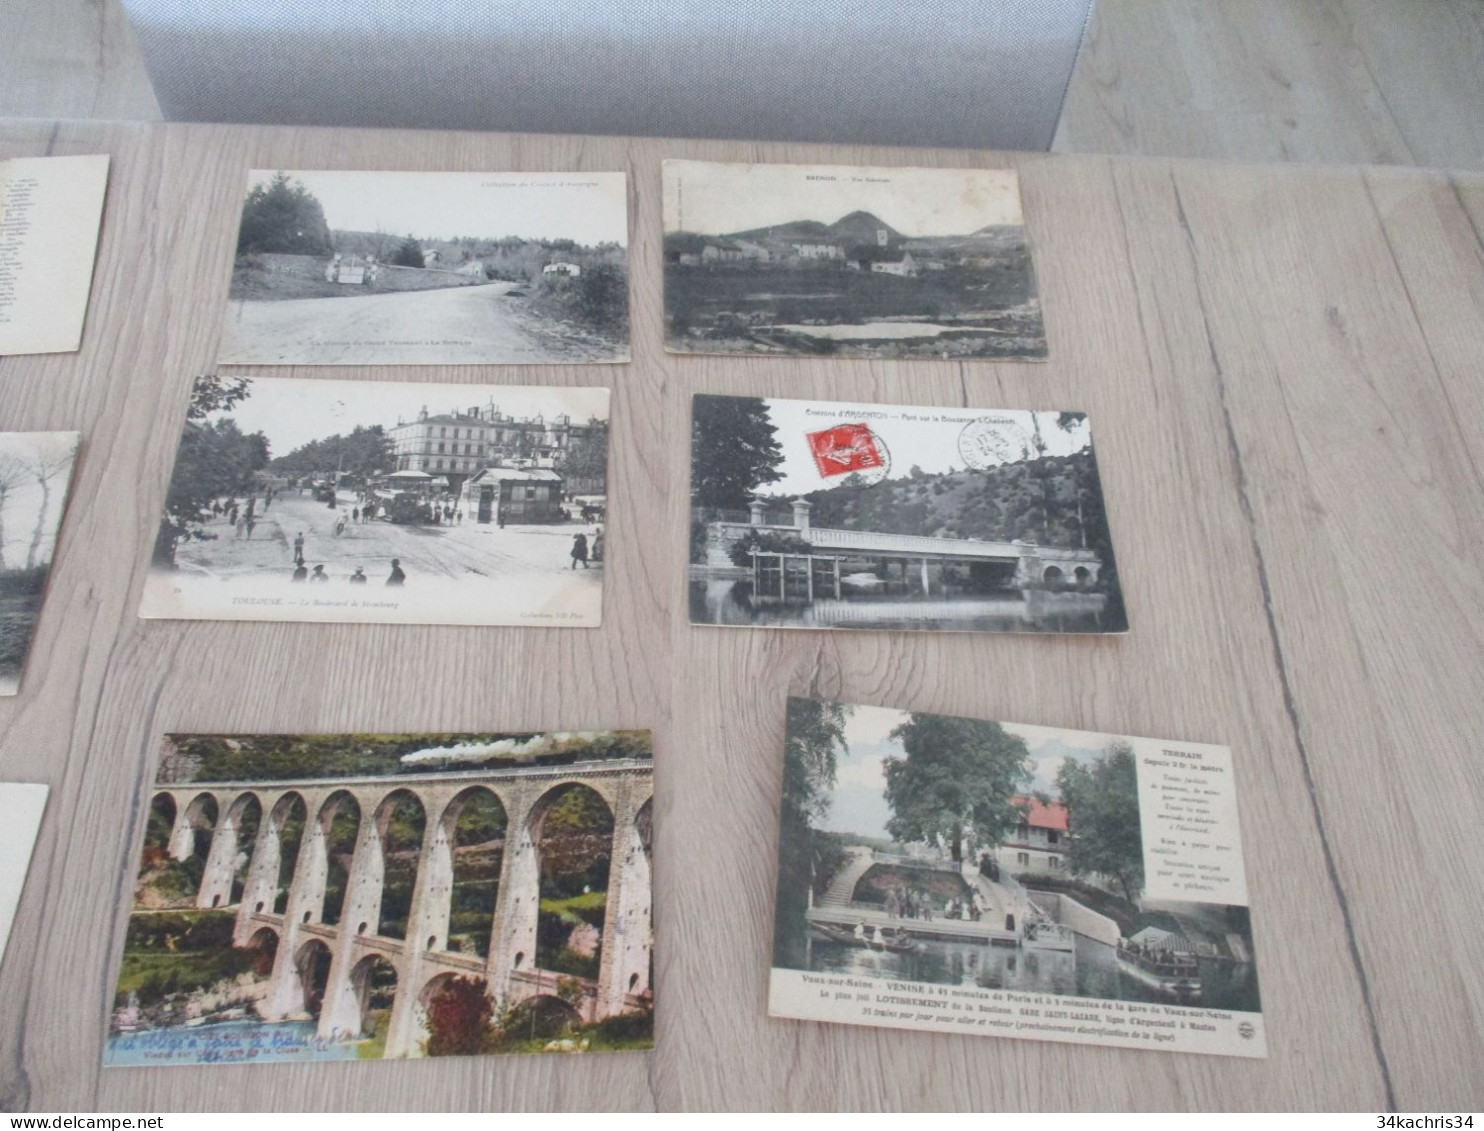 N°5 déstockage collection énorme CPA cartes postales 100 CPA différentes petites et moyennes cartes pas de drouille